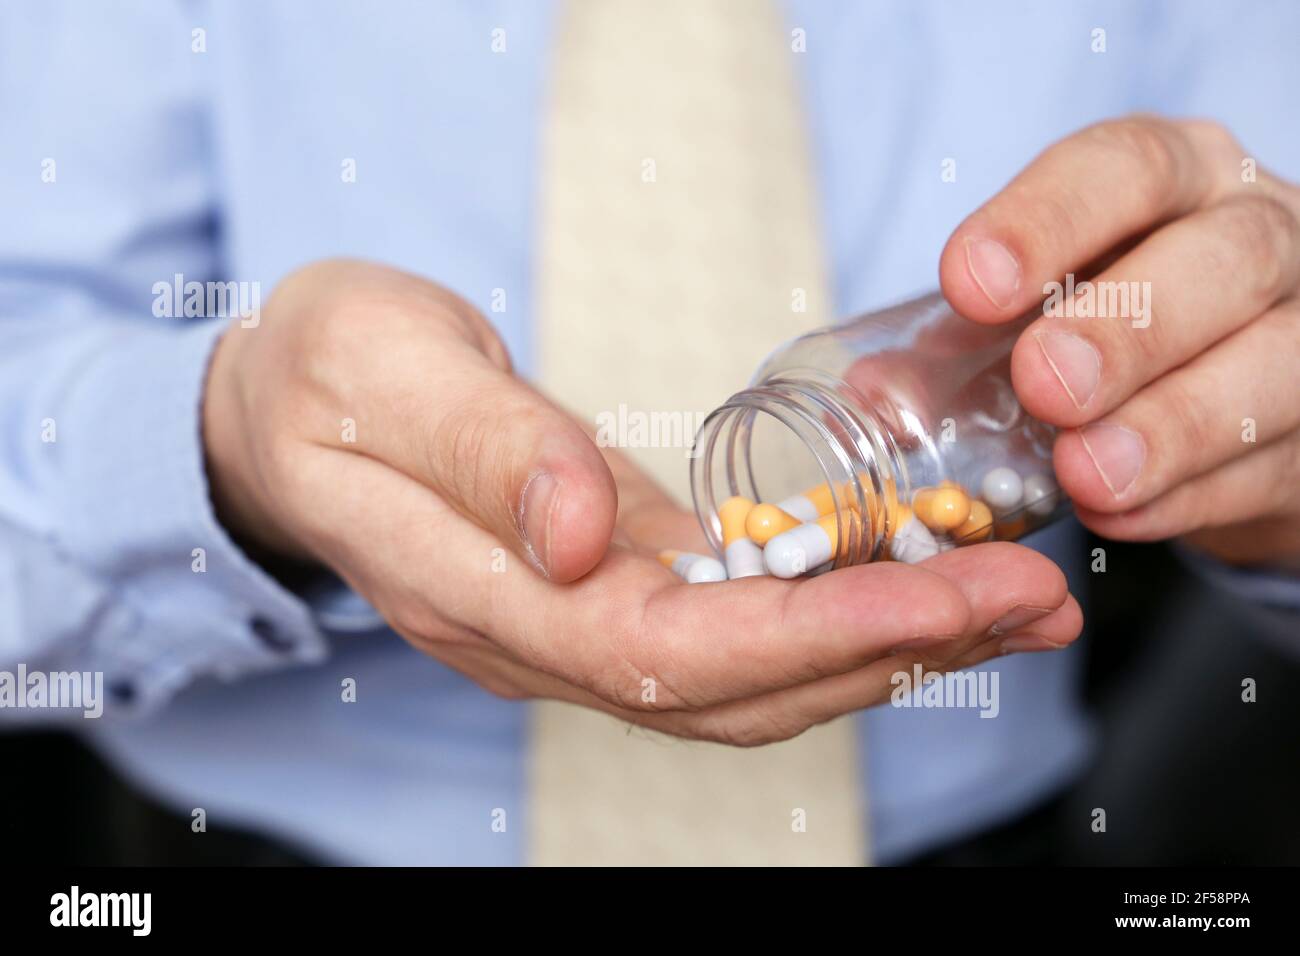 Homme dans les vêtements de bureau prenant des pilules, bouteille de médicament dans les capsules de près. Concept d'antidépresseur, stress au travail, vitamines, dose de médicaments, grippe Banque D'Images